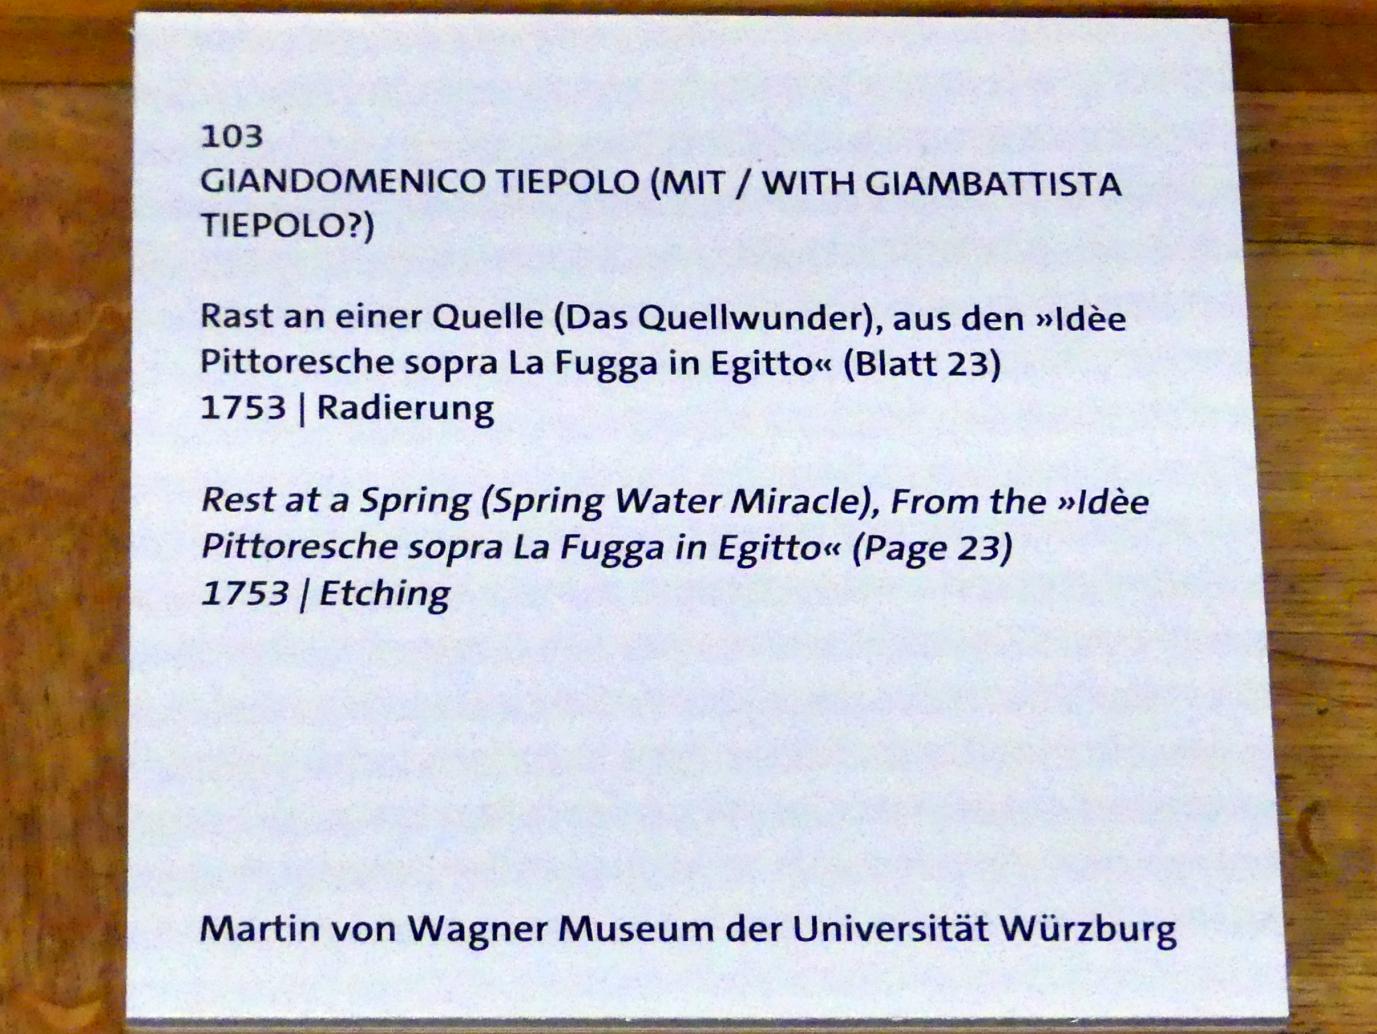 Giovanni Domenico Tiepolo (1743–1785), Rast an einer Quelle (Das Quellwunder), Würzburg, Martin von Wagner Museum, Ausstellung "Tiepolo und seine Zeit in Würzburg" vom 31.10.2020-15.07.2021, Saal 1, 1753, Bild 3/3